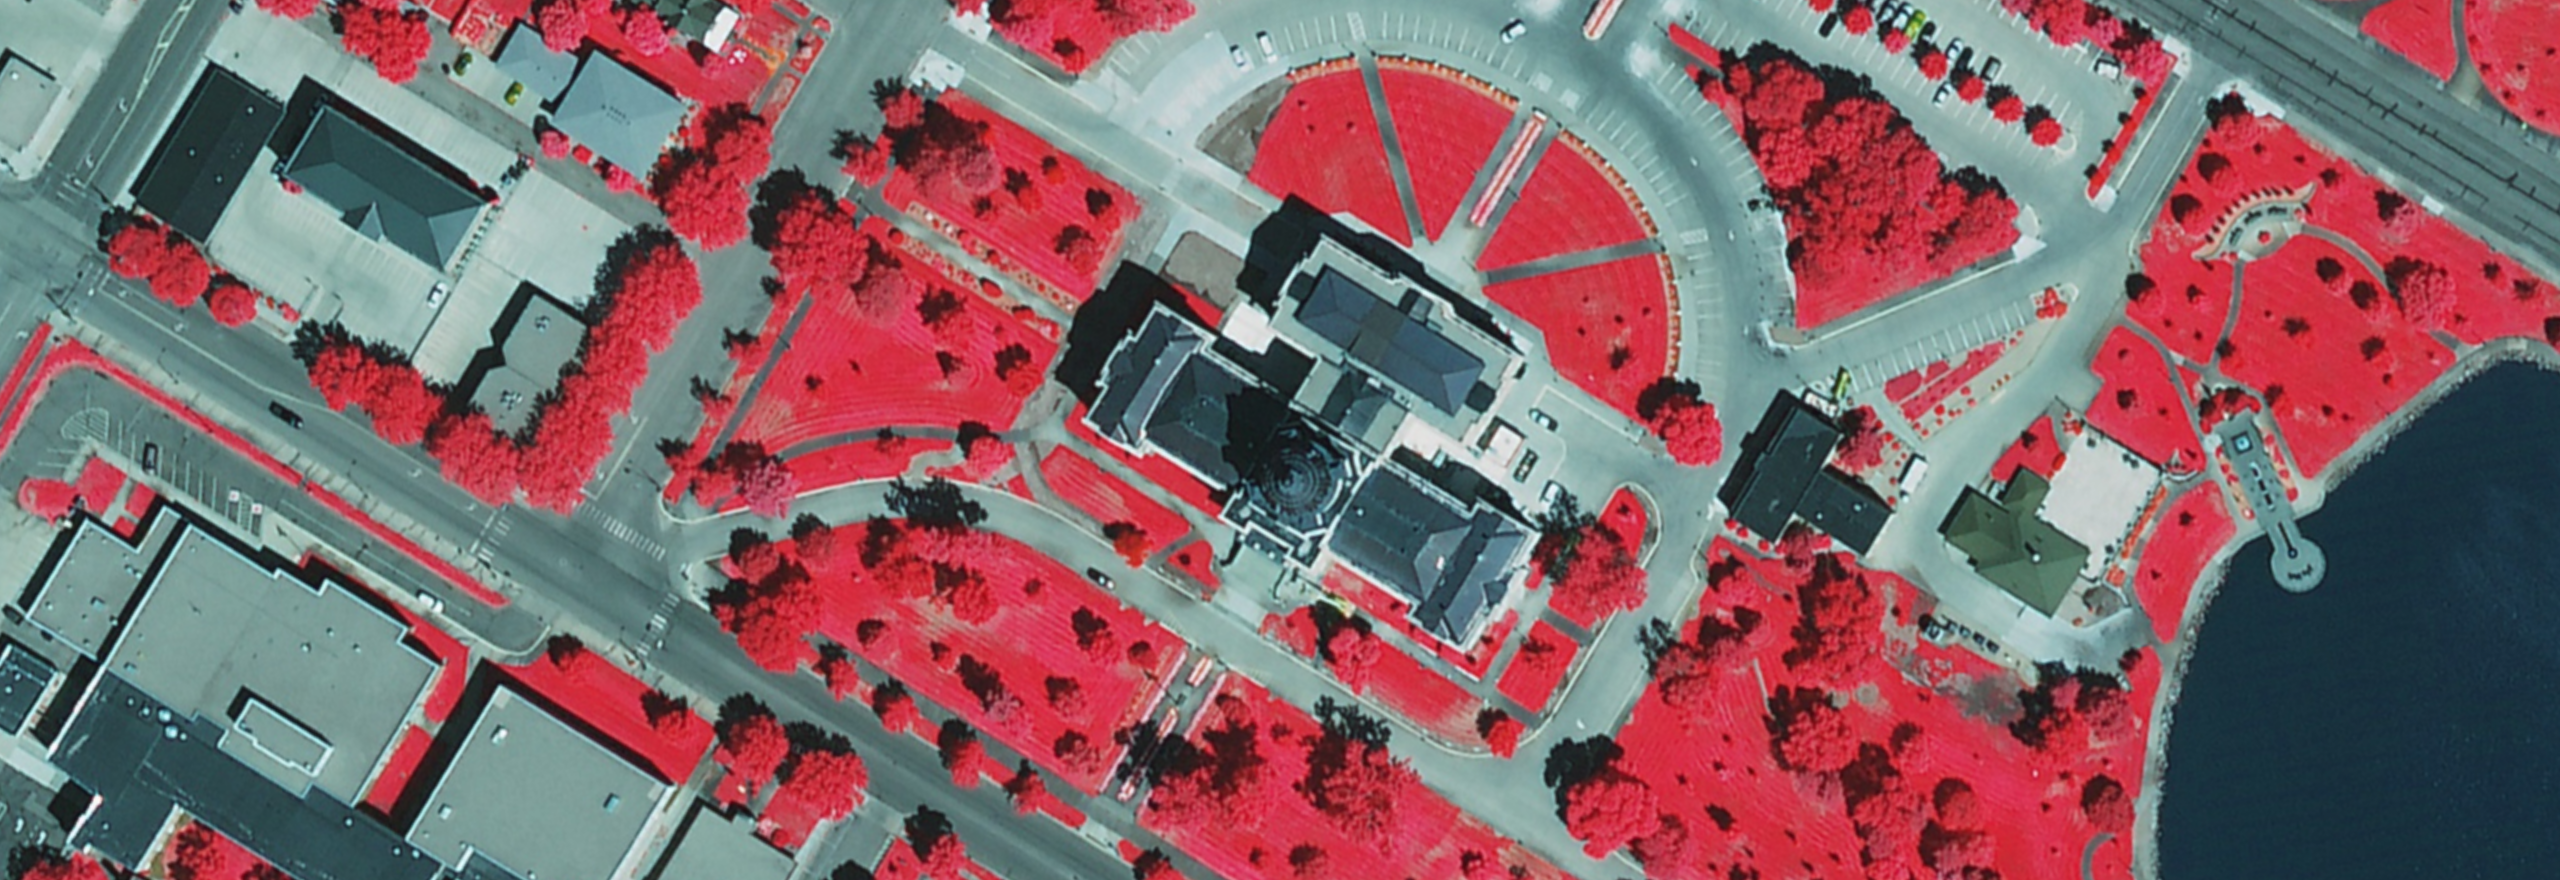 Ortofoto aerea all'infrarosso a colori di un edificio governativo